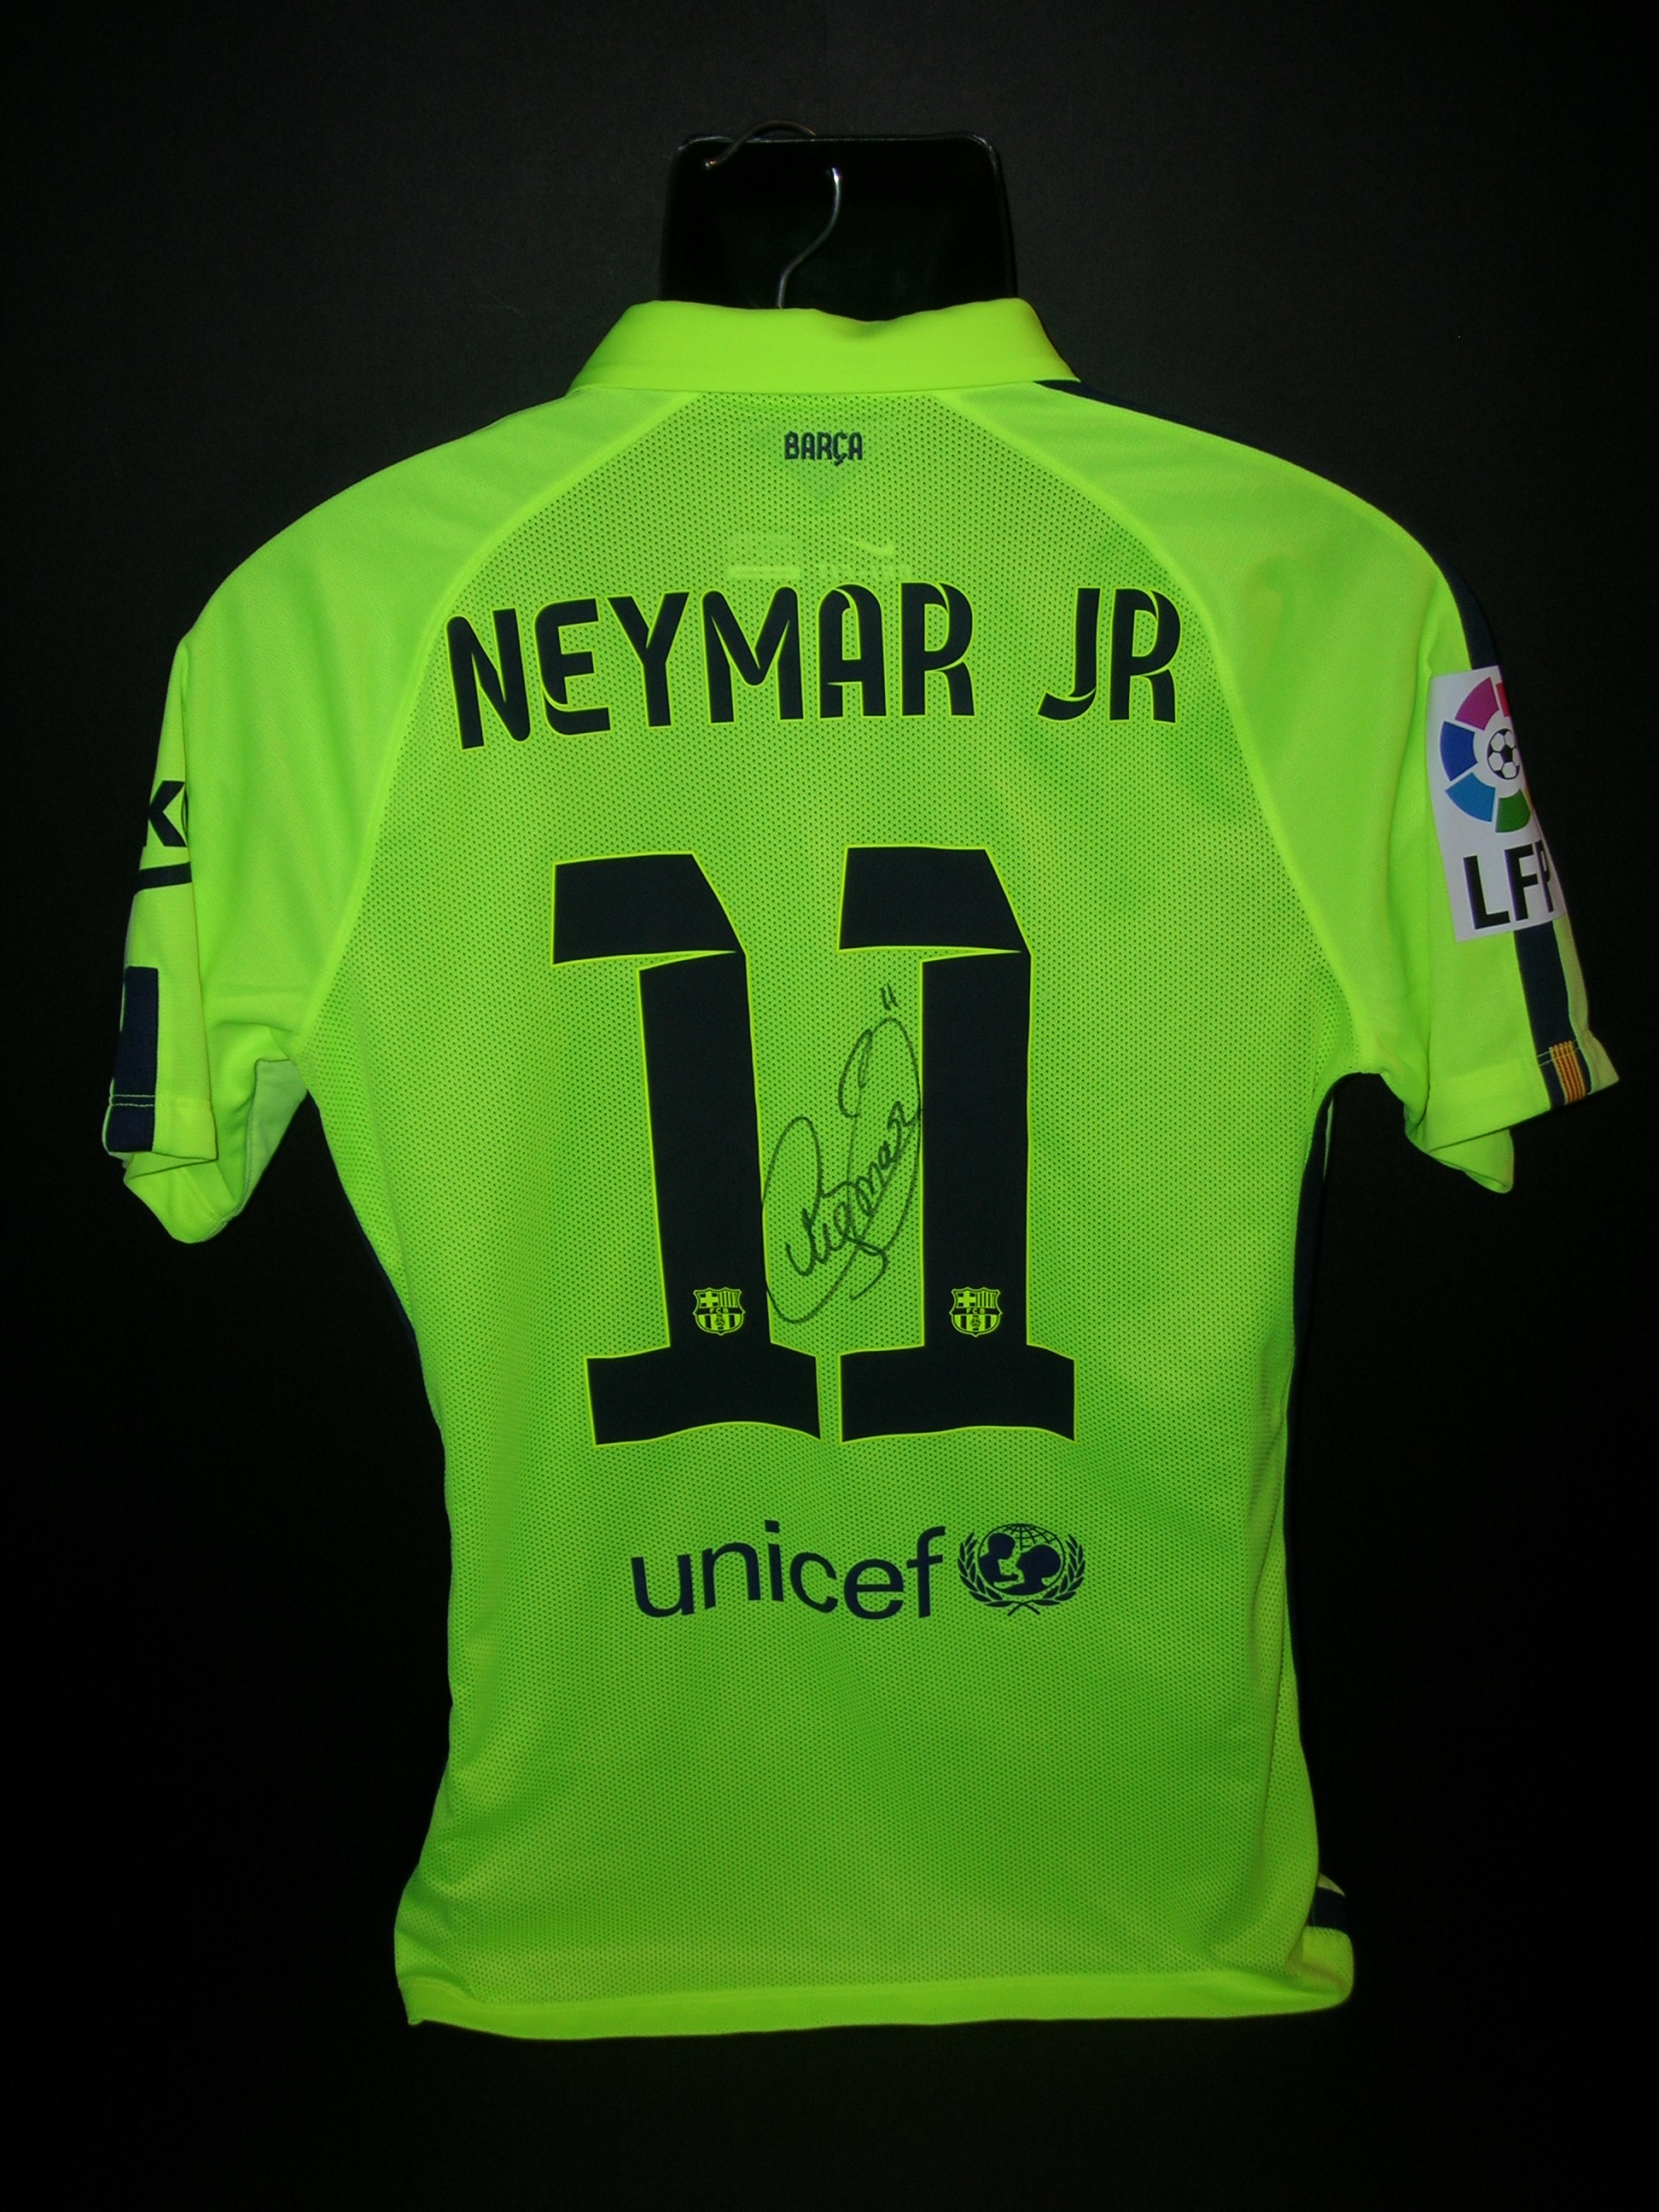 Barcellona n.11  Neymaier  JR.  2014  -  446